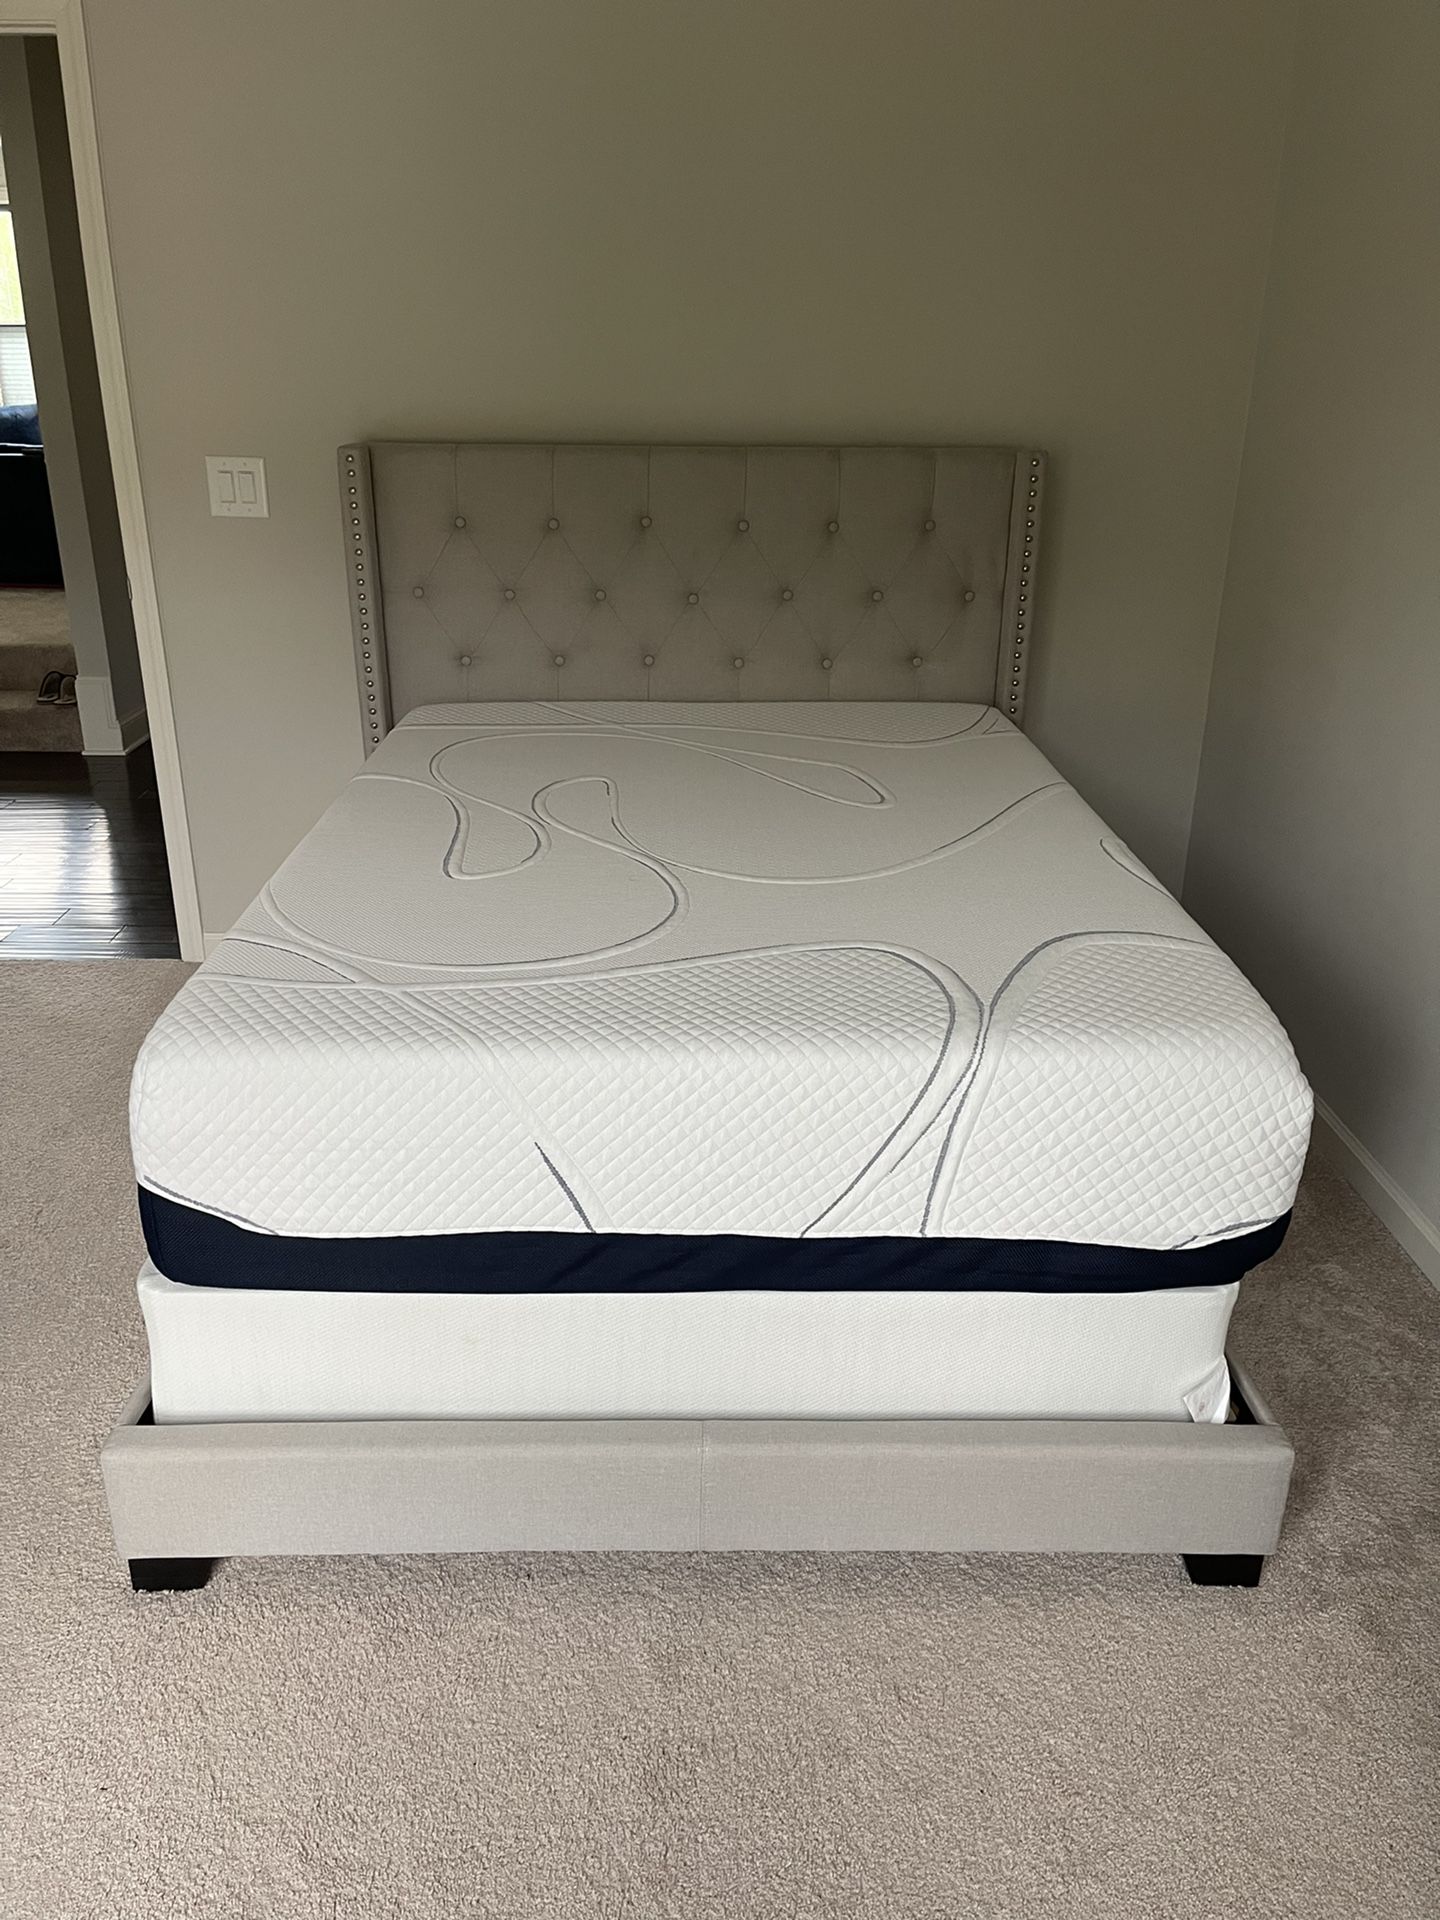 New Full Size Bed & Frame